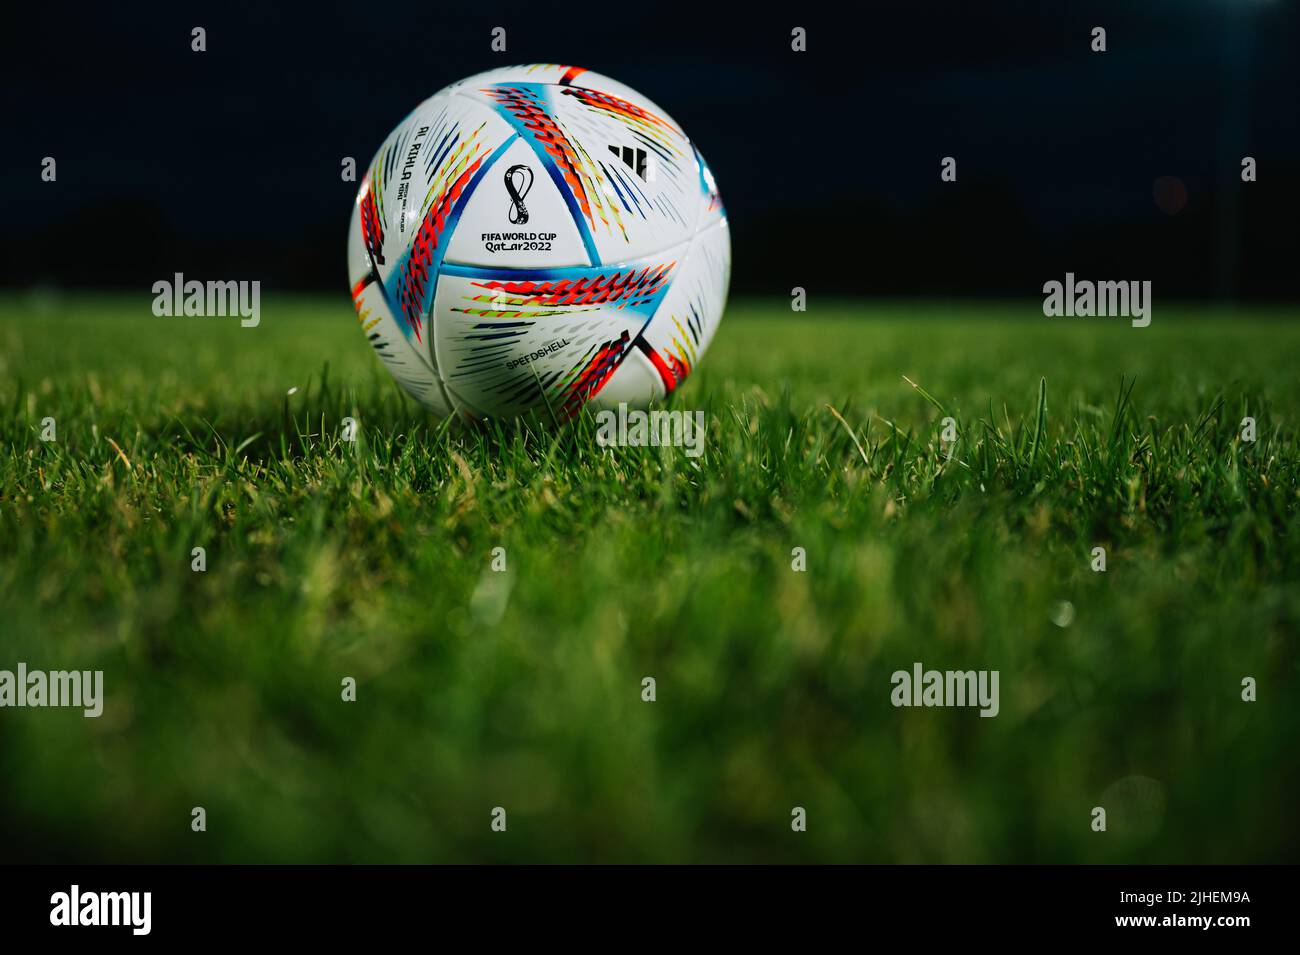 QATAR, DOHA, 18 LUGLIO 2022: Calcio ufficiale della Coppa del mondo FIFA Adidas al Rihla. Campionato del mondo in Qatar 2022. Calcio partita Ball su erba verde Foto Stock